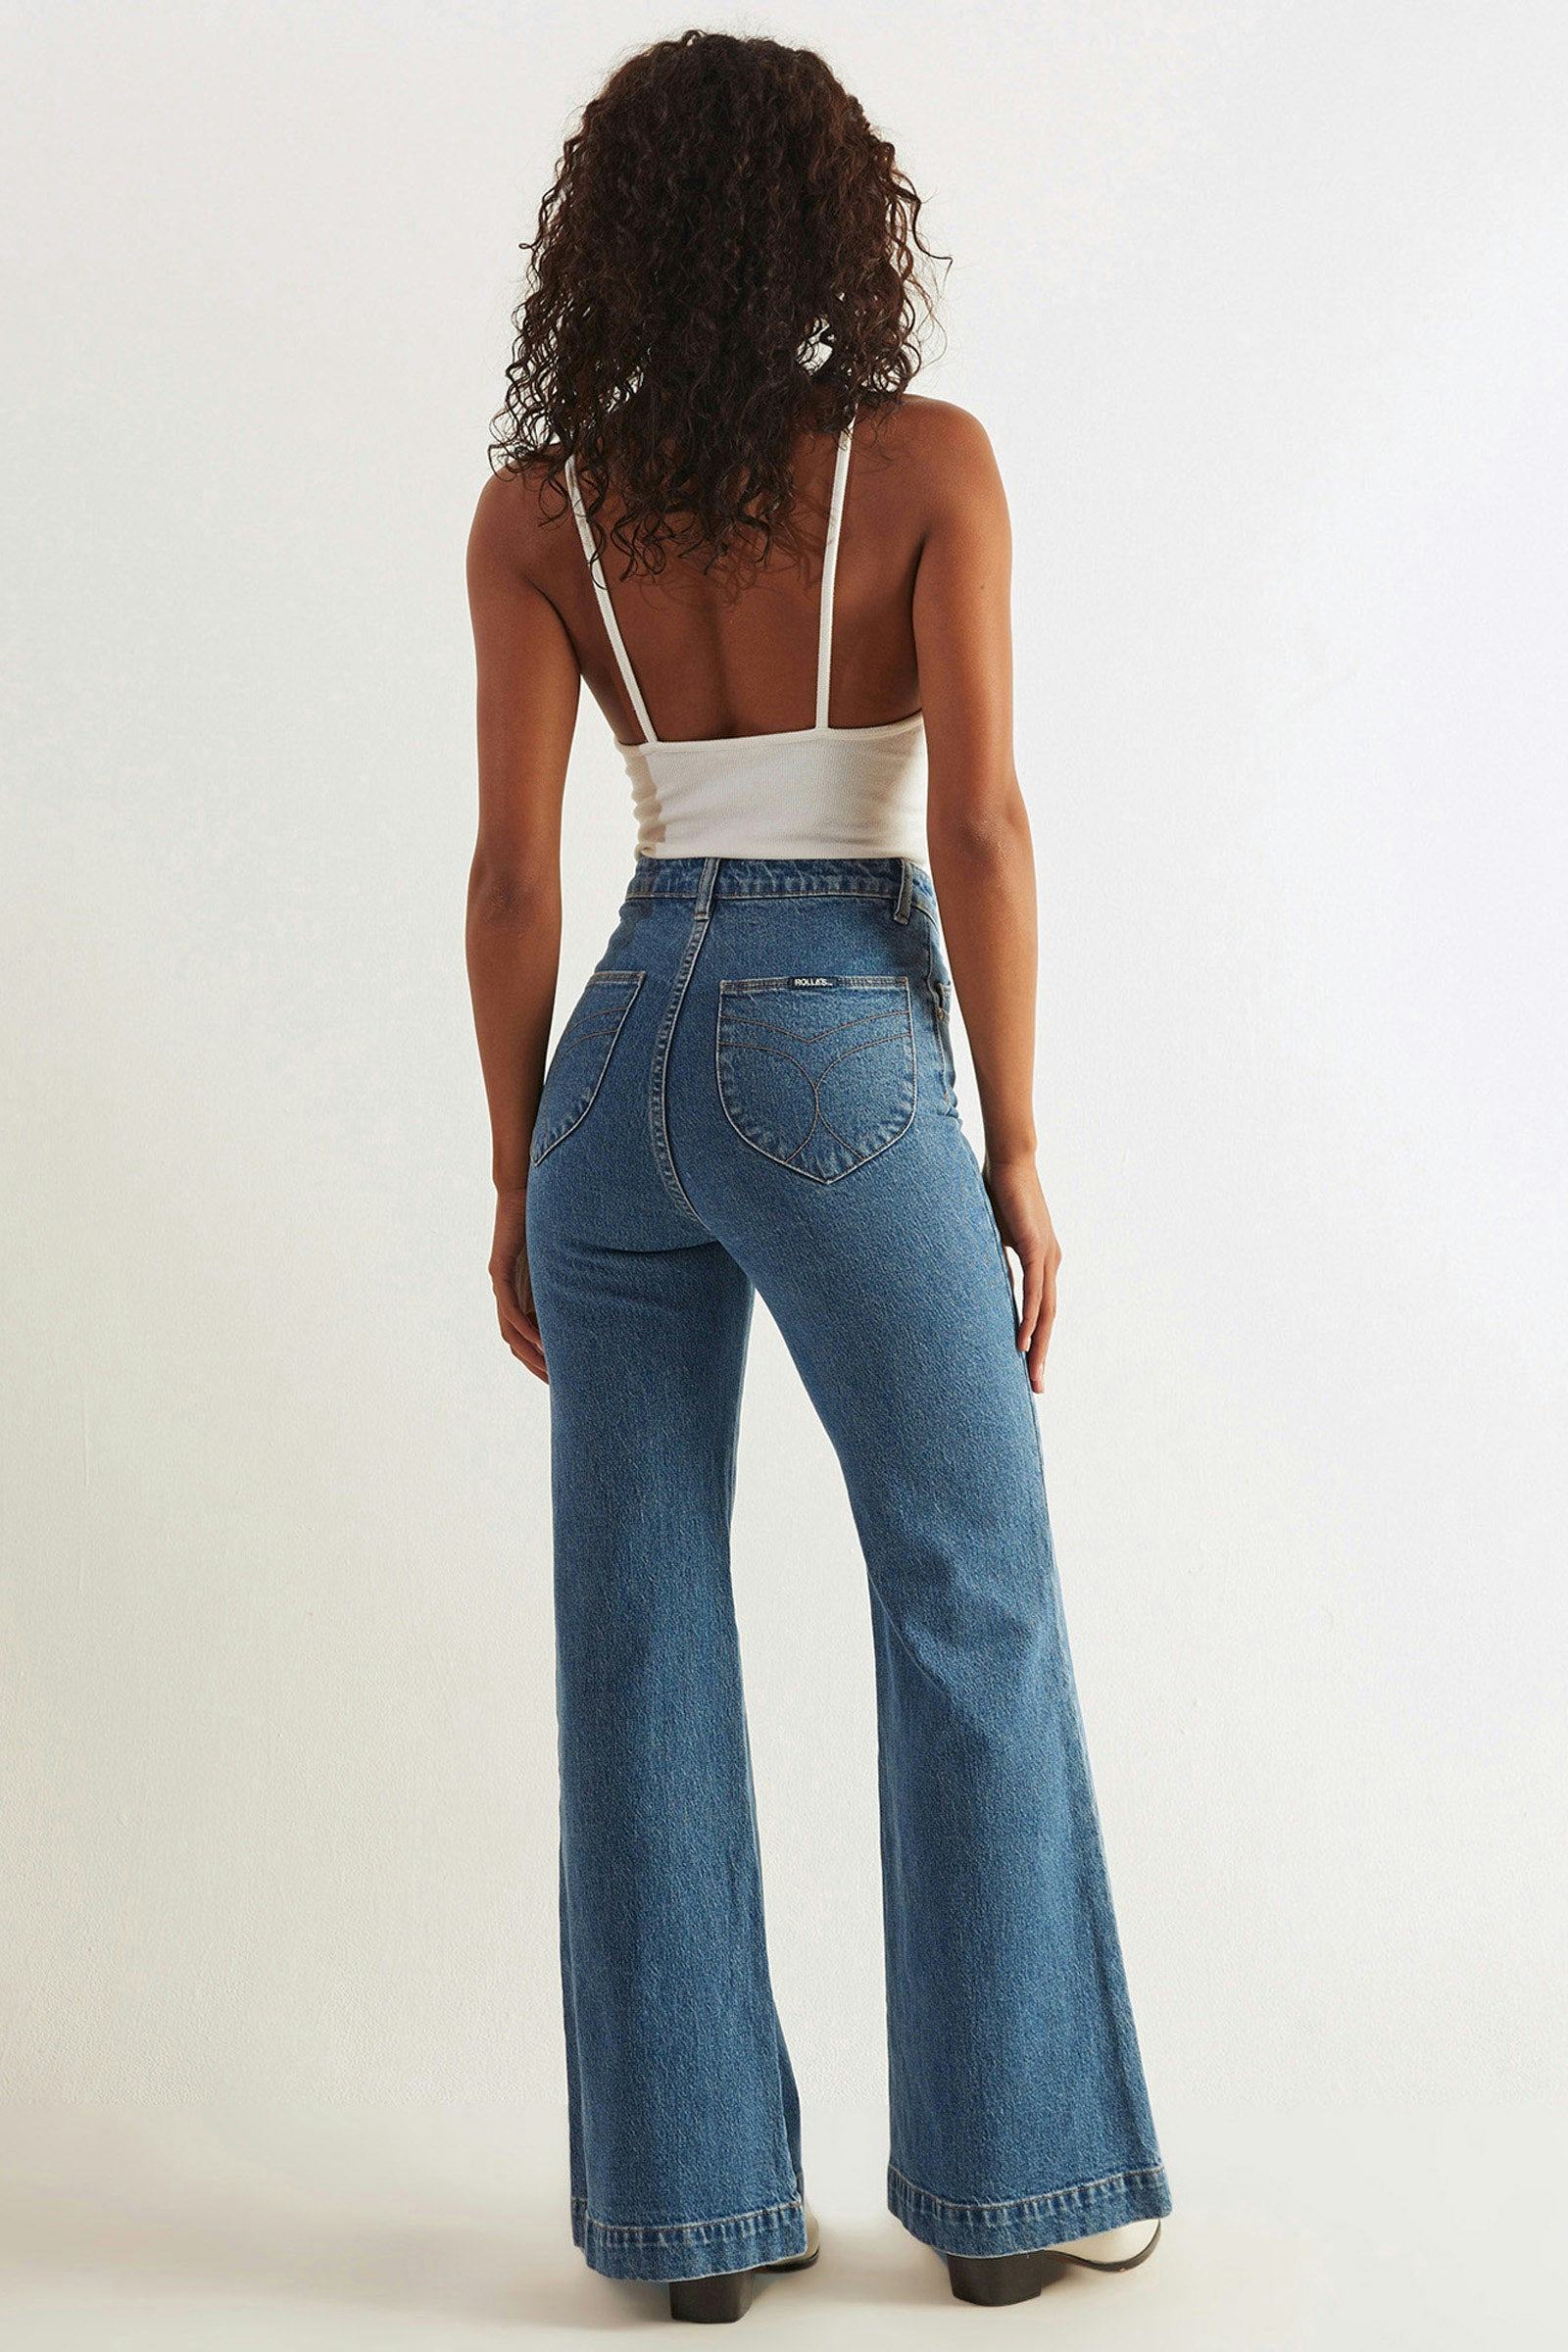 Buy Eastcoast Flare - Sadie Blue Online | Rollas Jeans